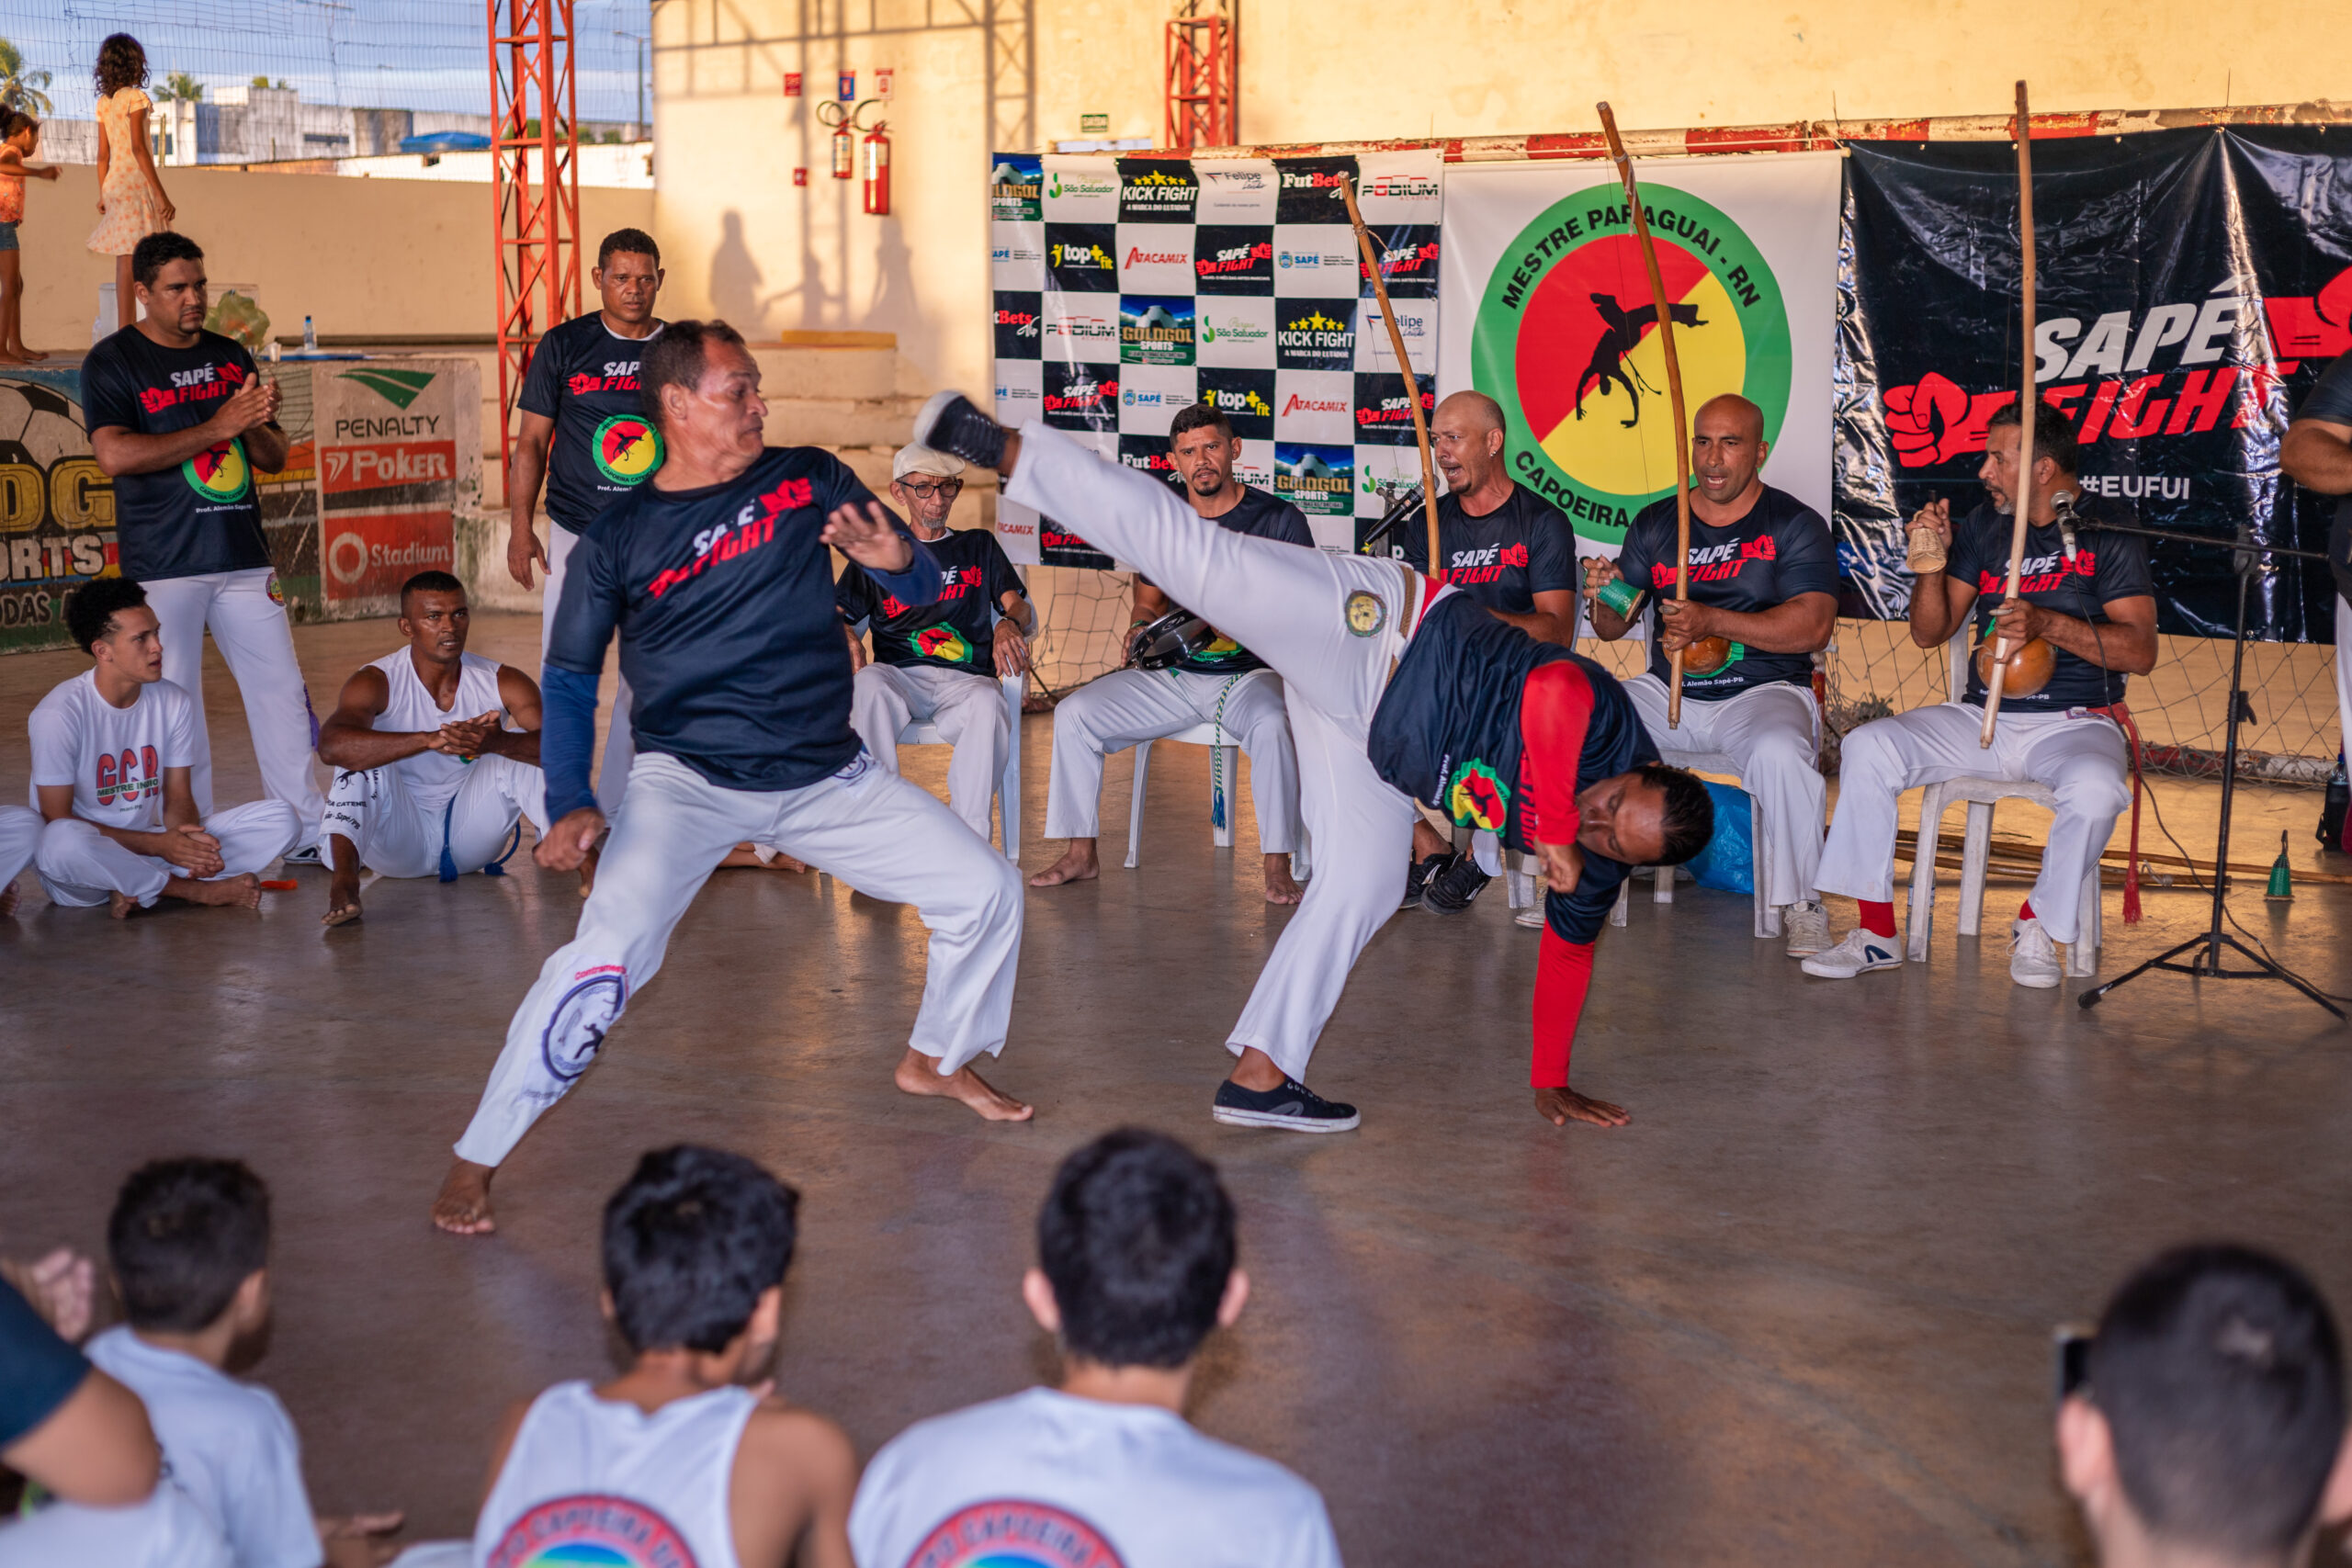 ‘Sapé Fight’ chega ao fim com encontro de capoeiristas